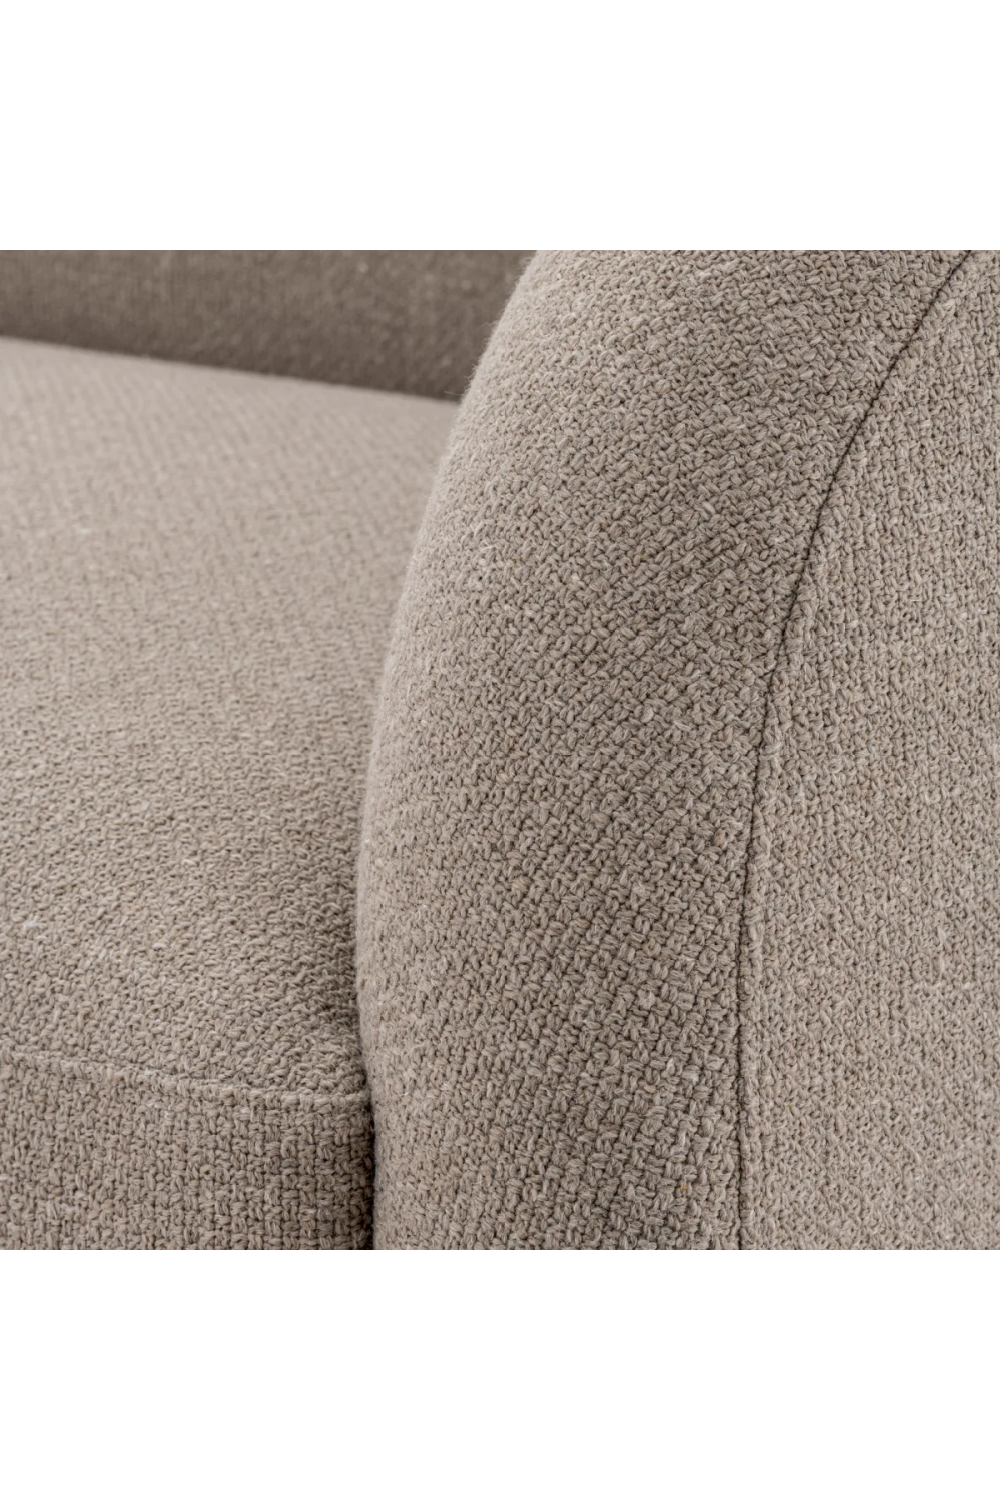 Gray Modern Sofa | Eichholtz Divisadero | Oroa.com